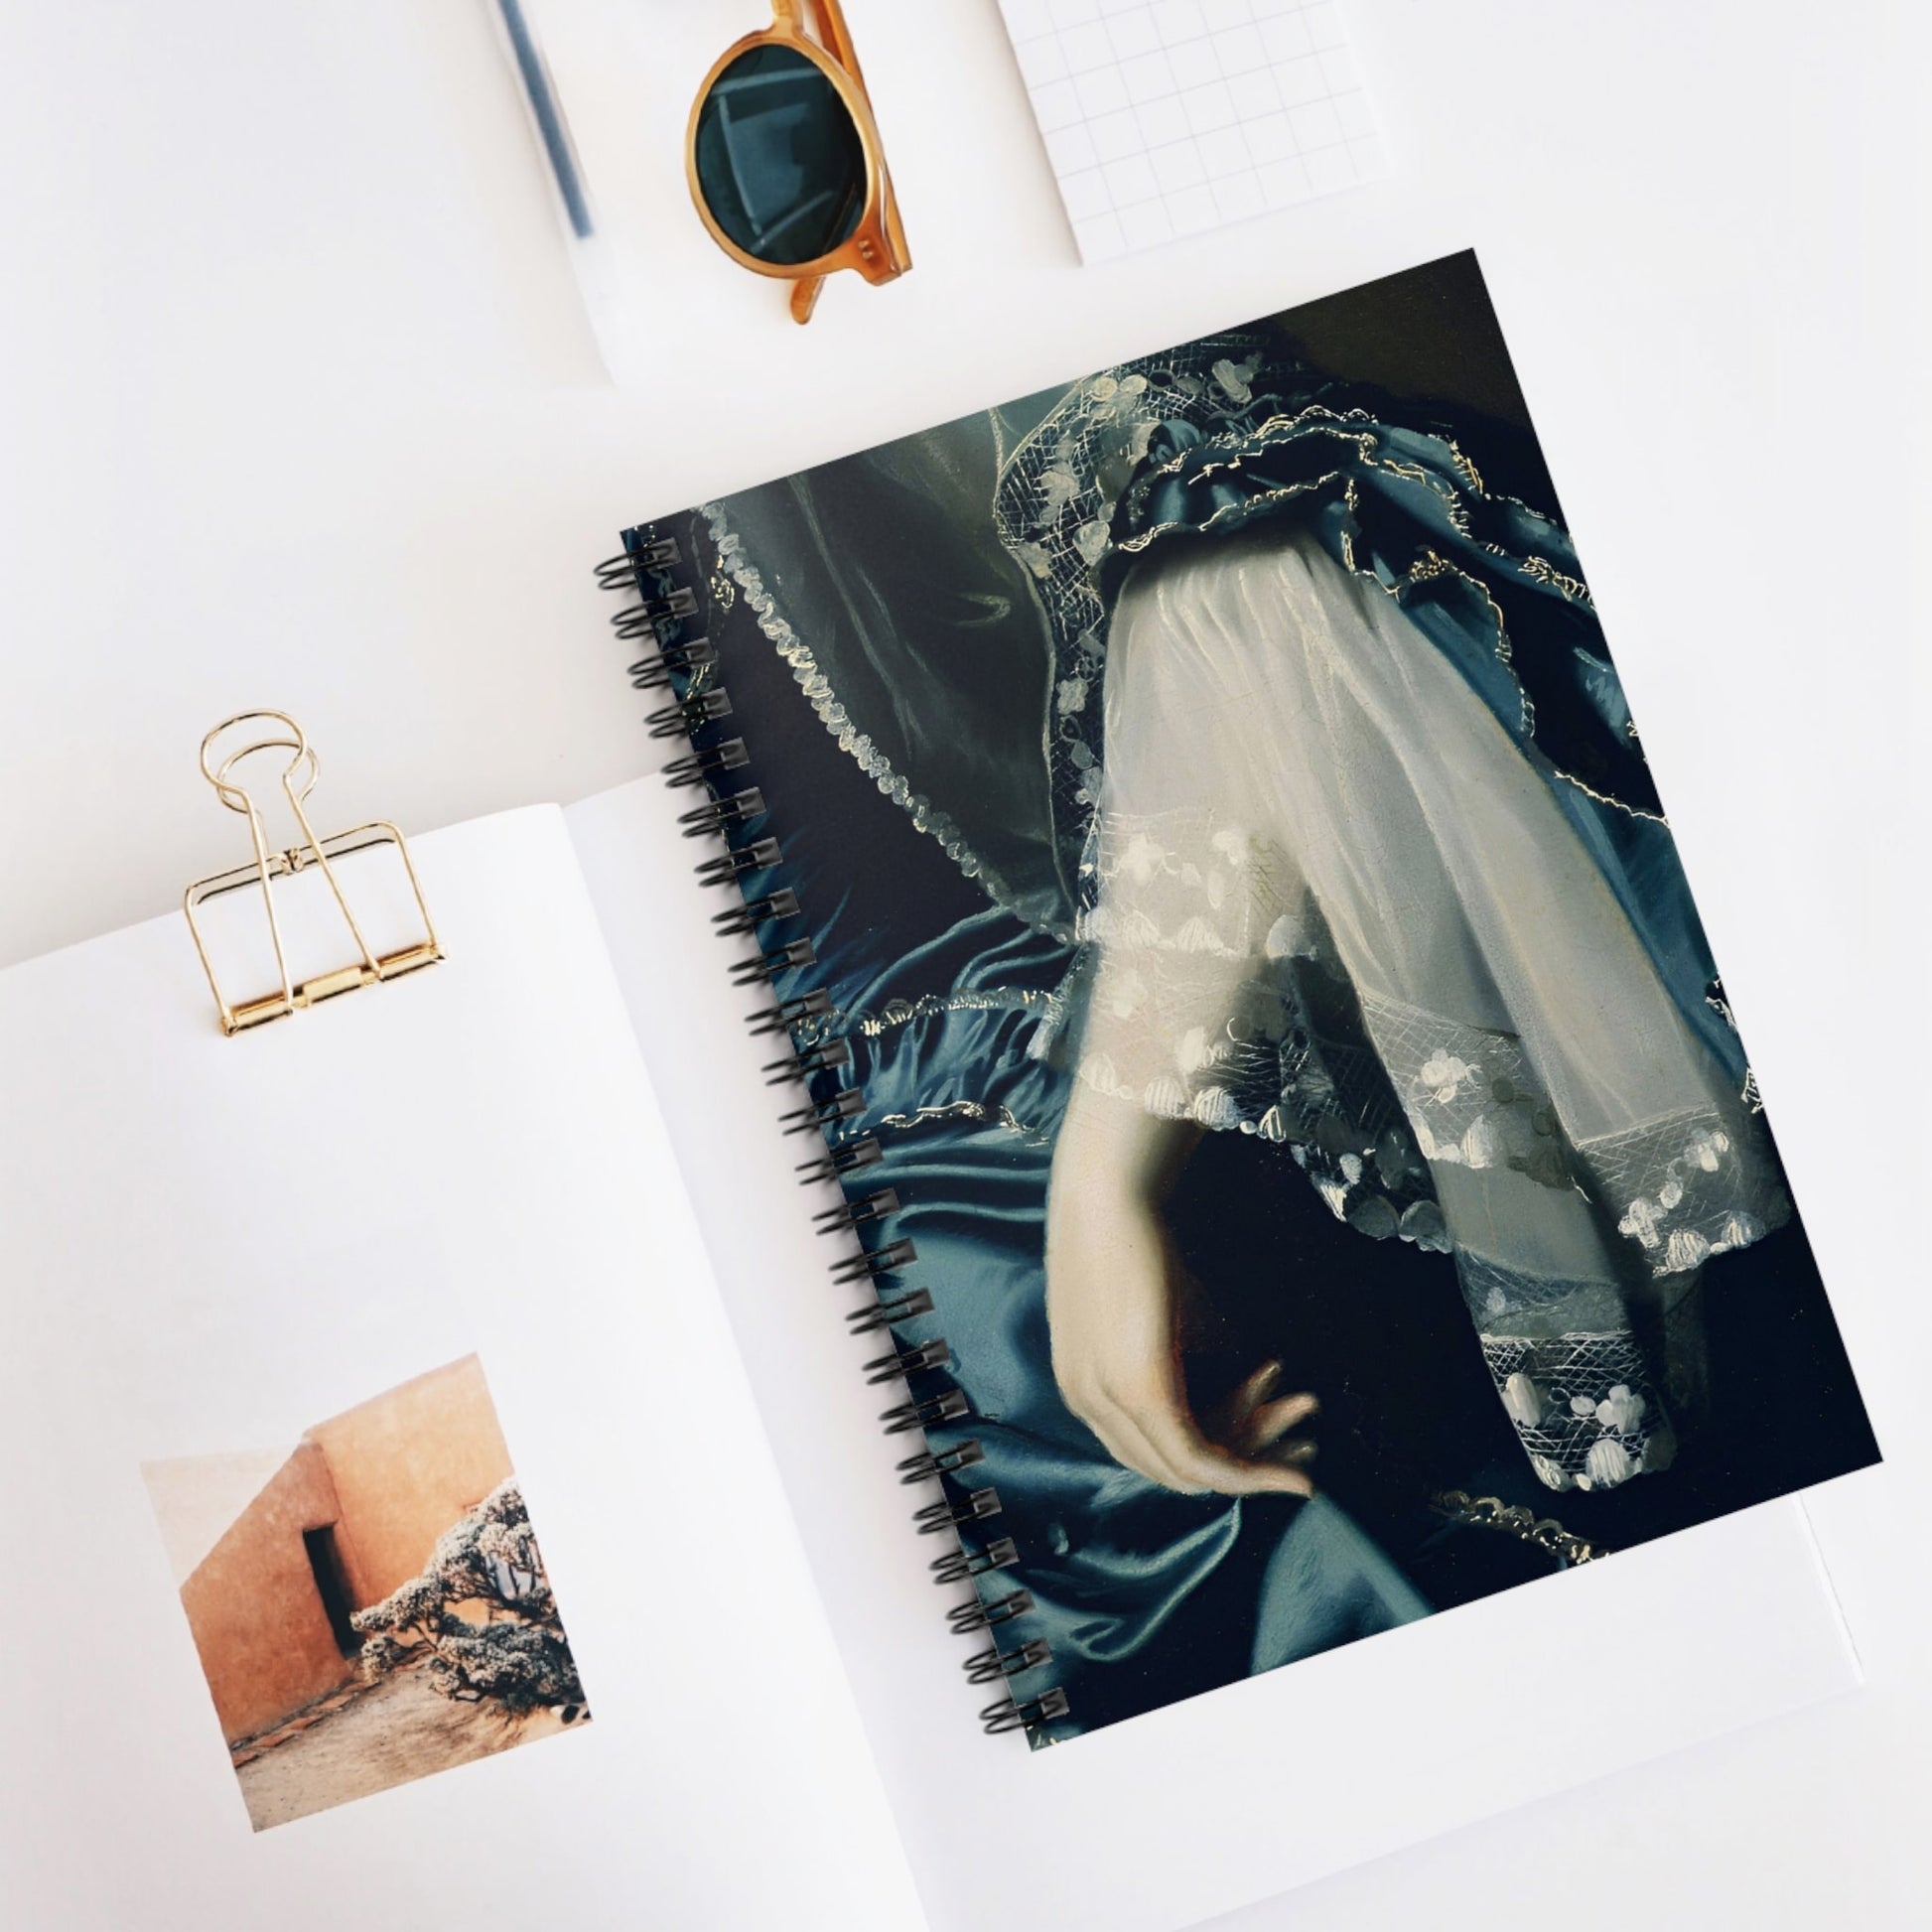 Renaissance Fashion Spiral Notebook Displayed on Desk